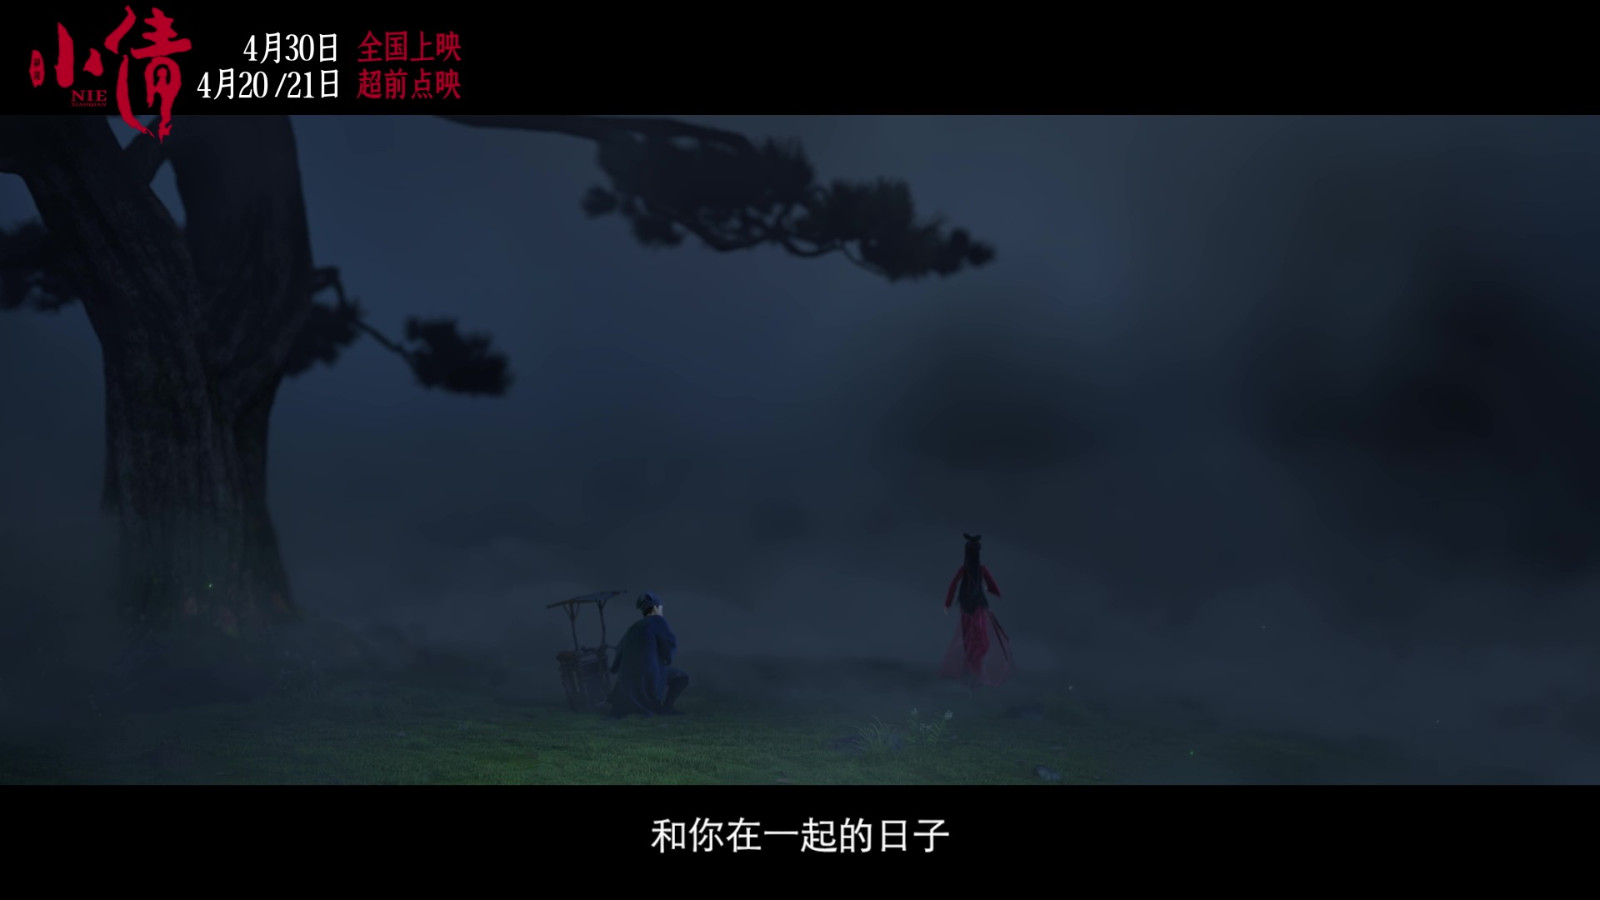 電影《小倩》片尾曲MV “只要今生”雙人海報